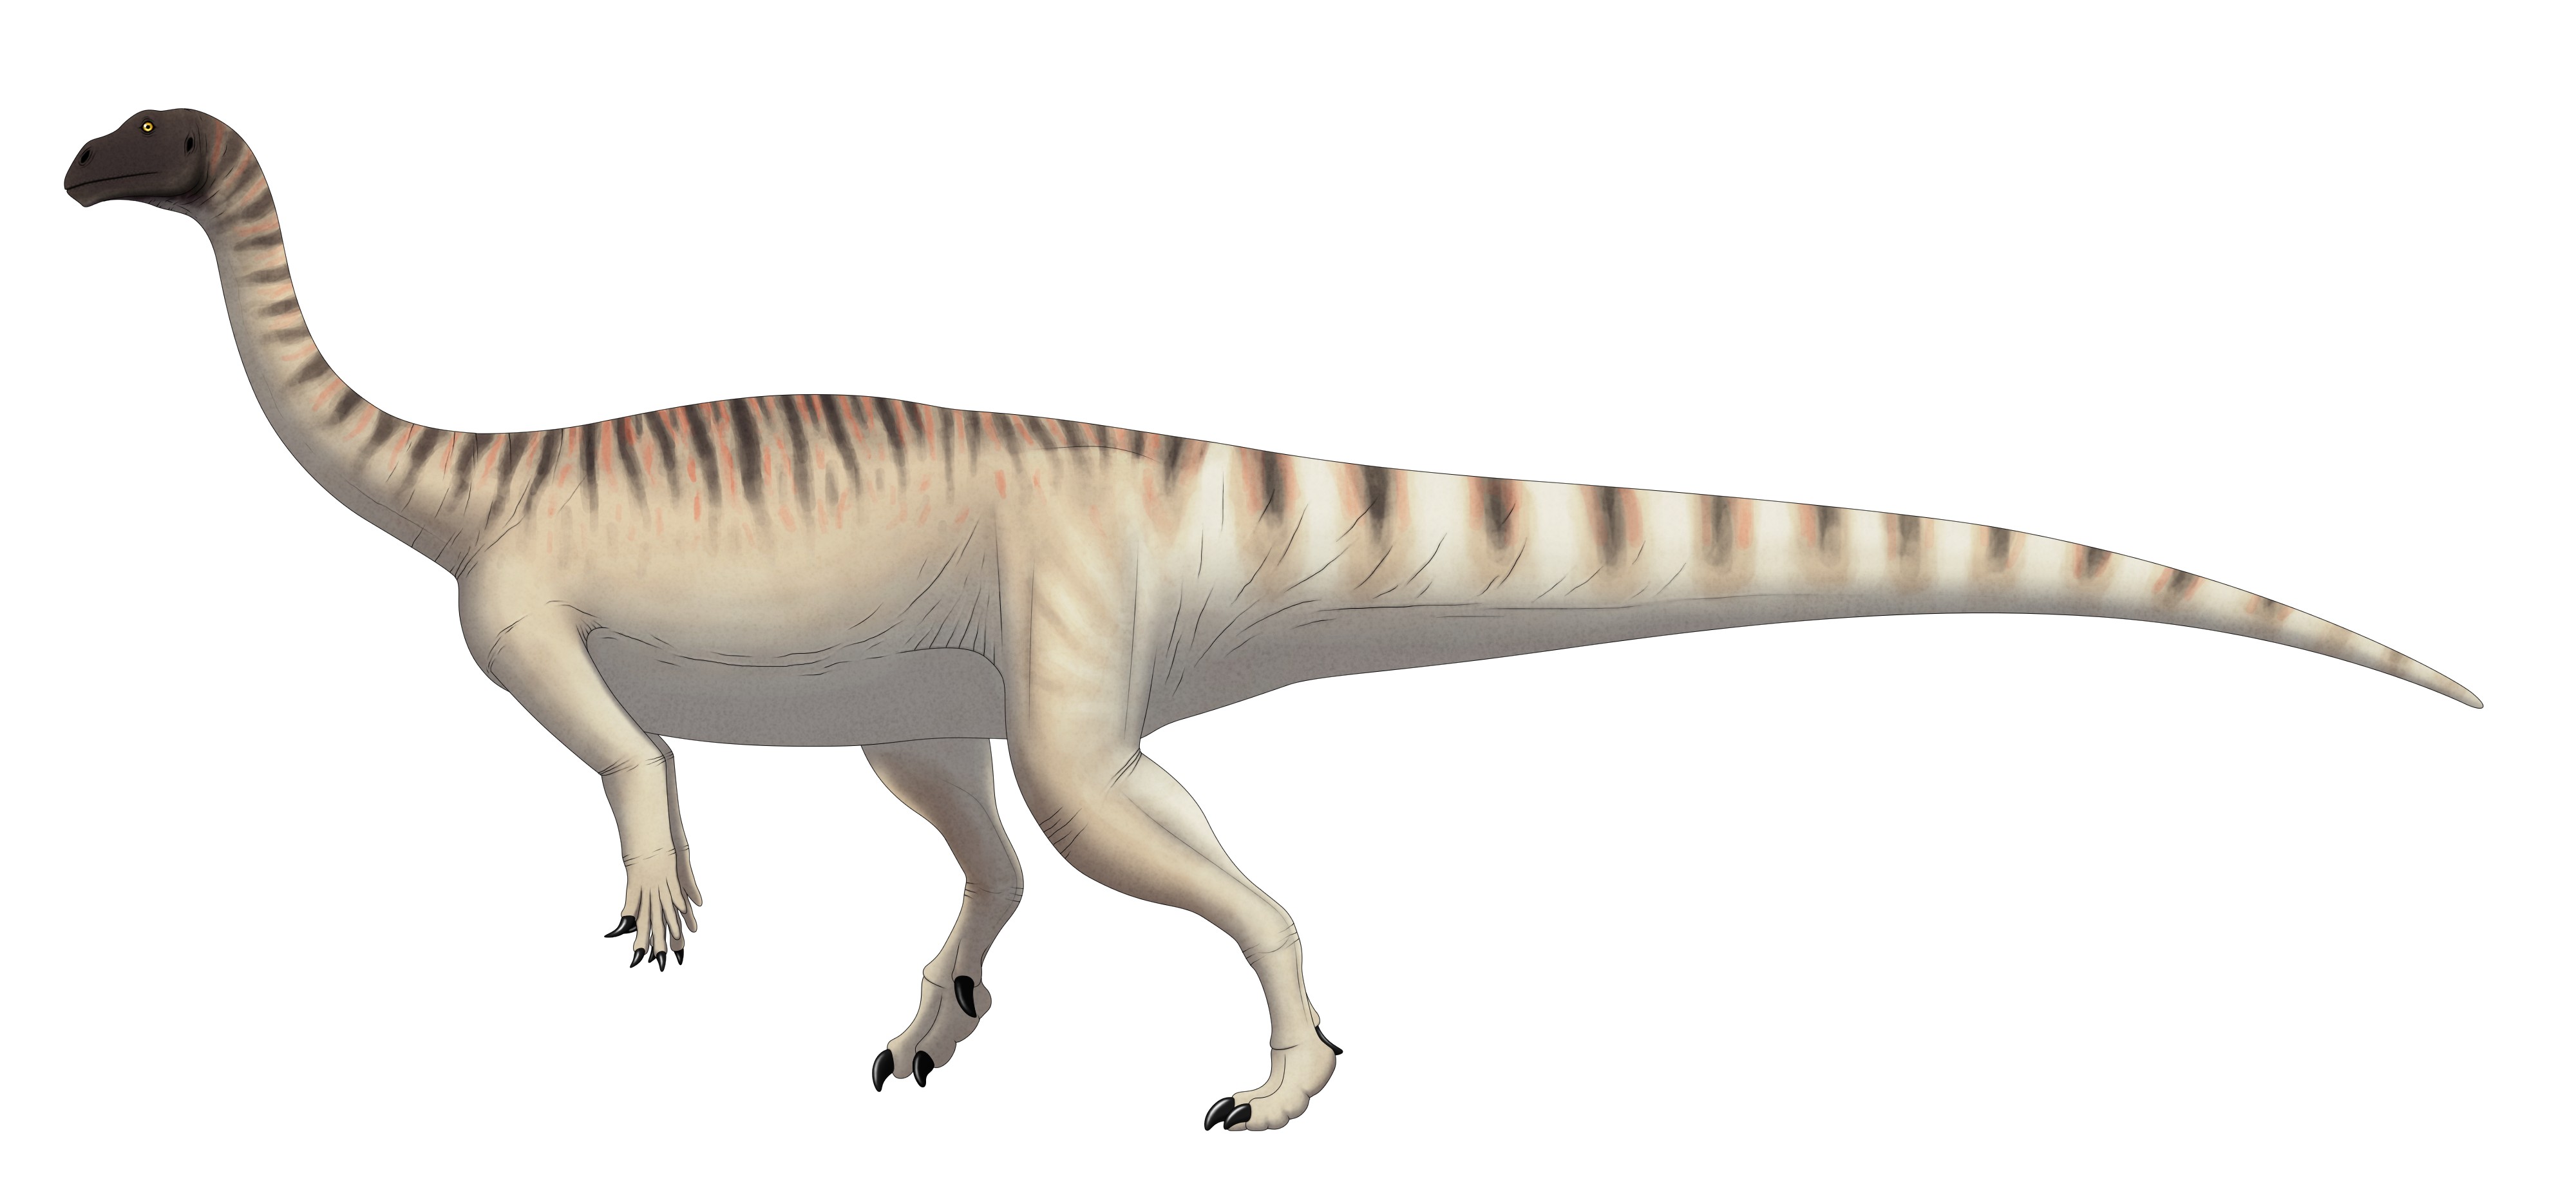 Restauração vital de Mussaurus patagonicus adulto baseada na reconstrução esquelética de Otero et al. (2019) (Foto: Wikimedia Commons)